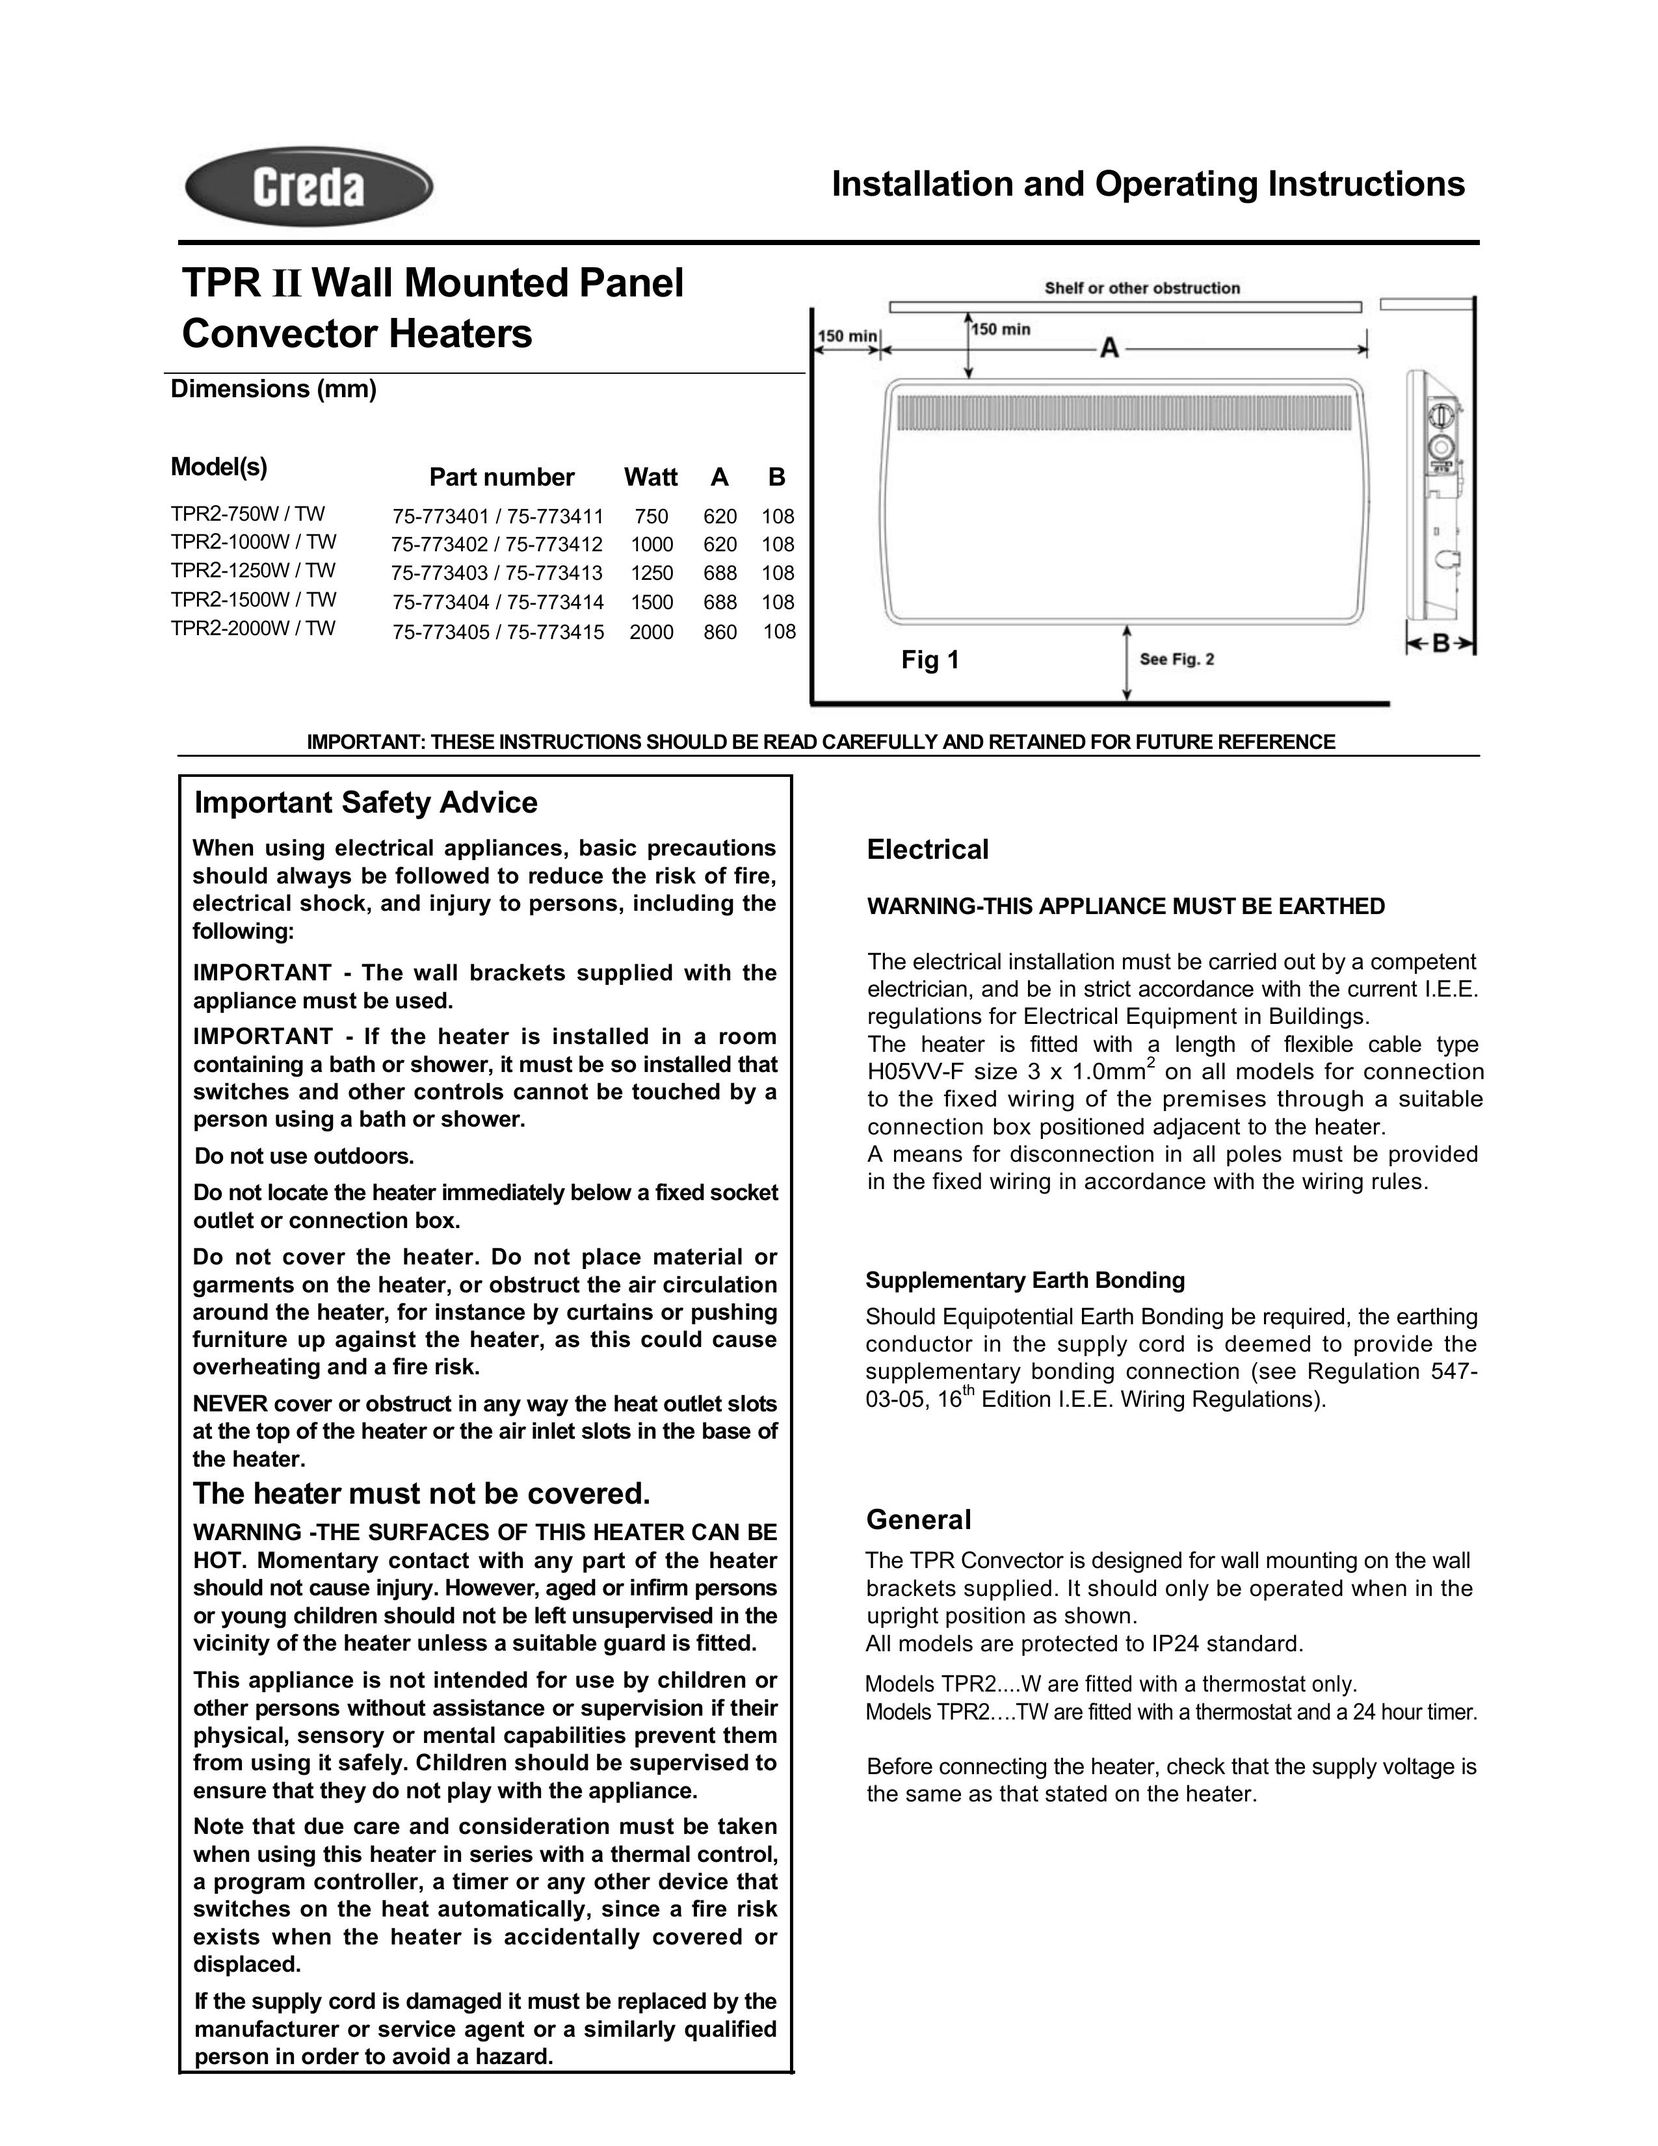 Creda TPR2-1500W Electric Heater User Manual